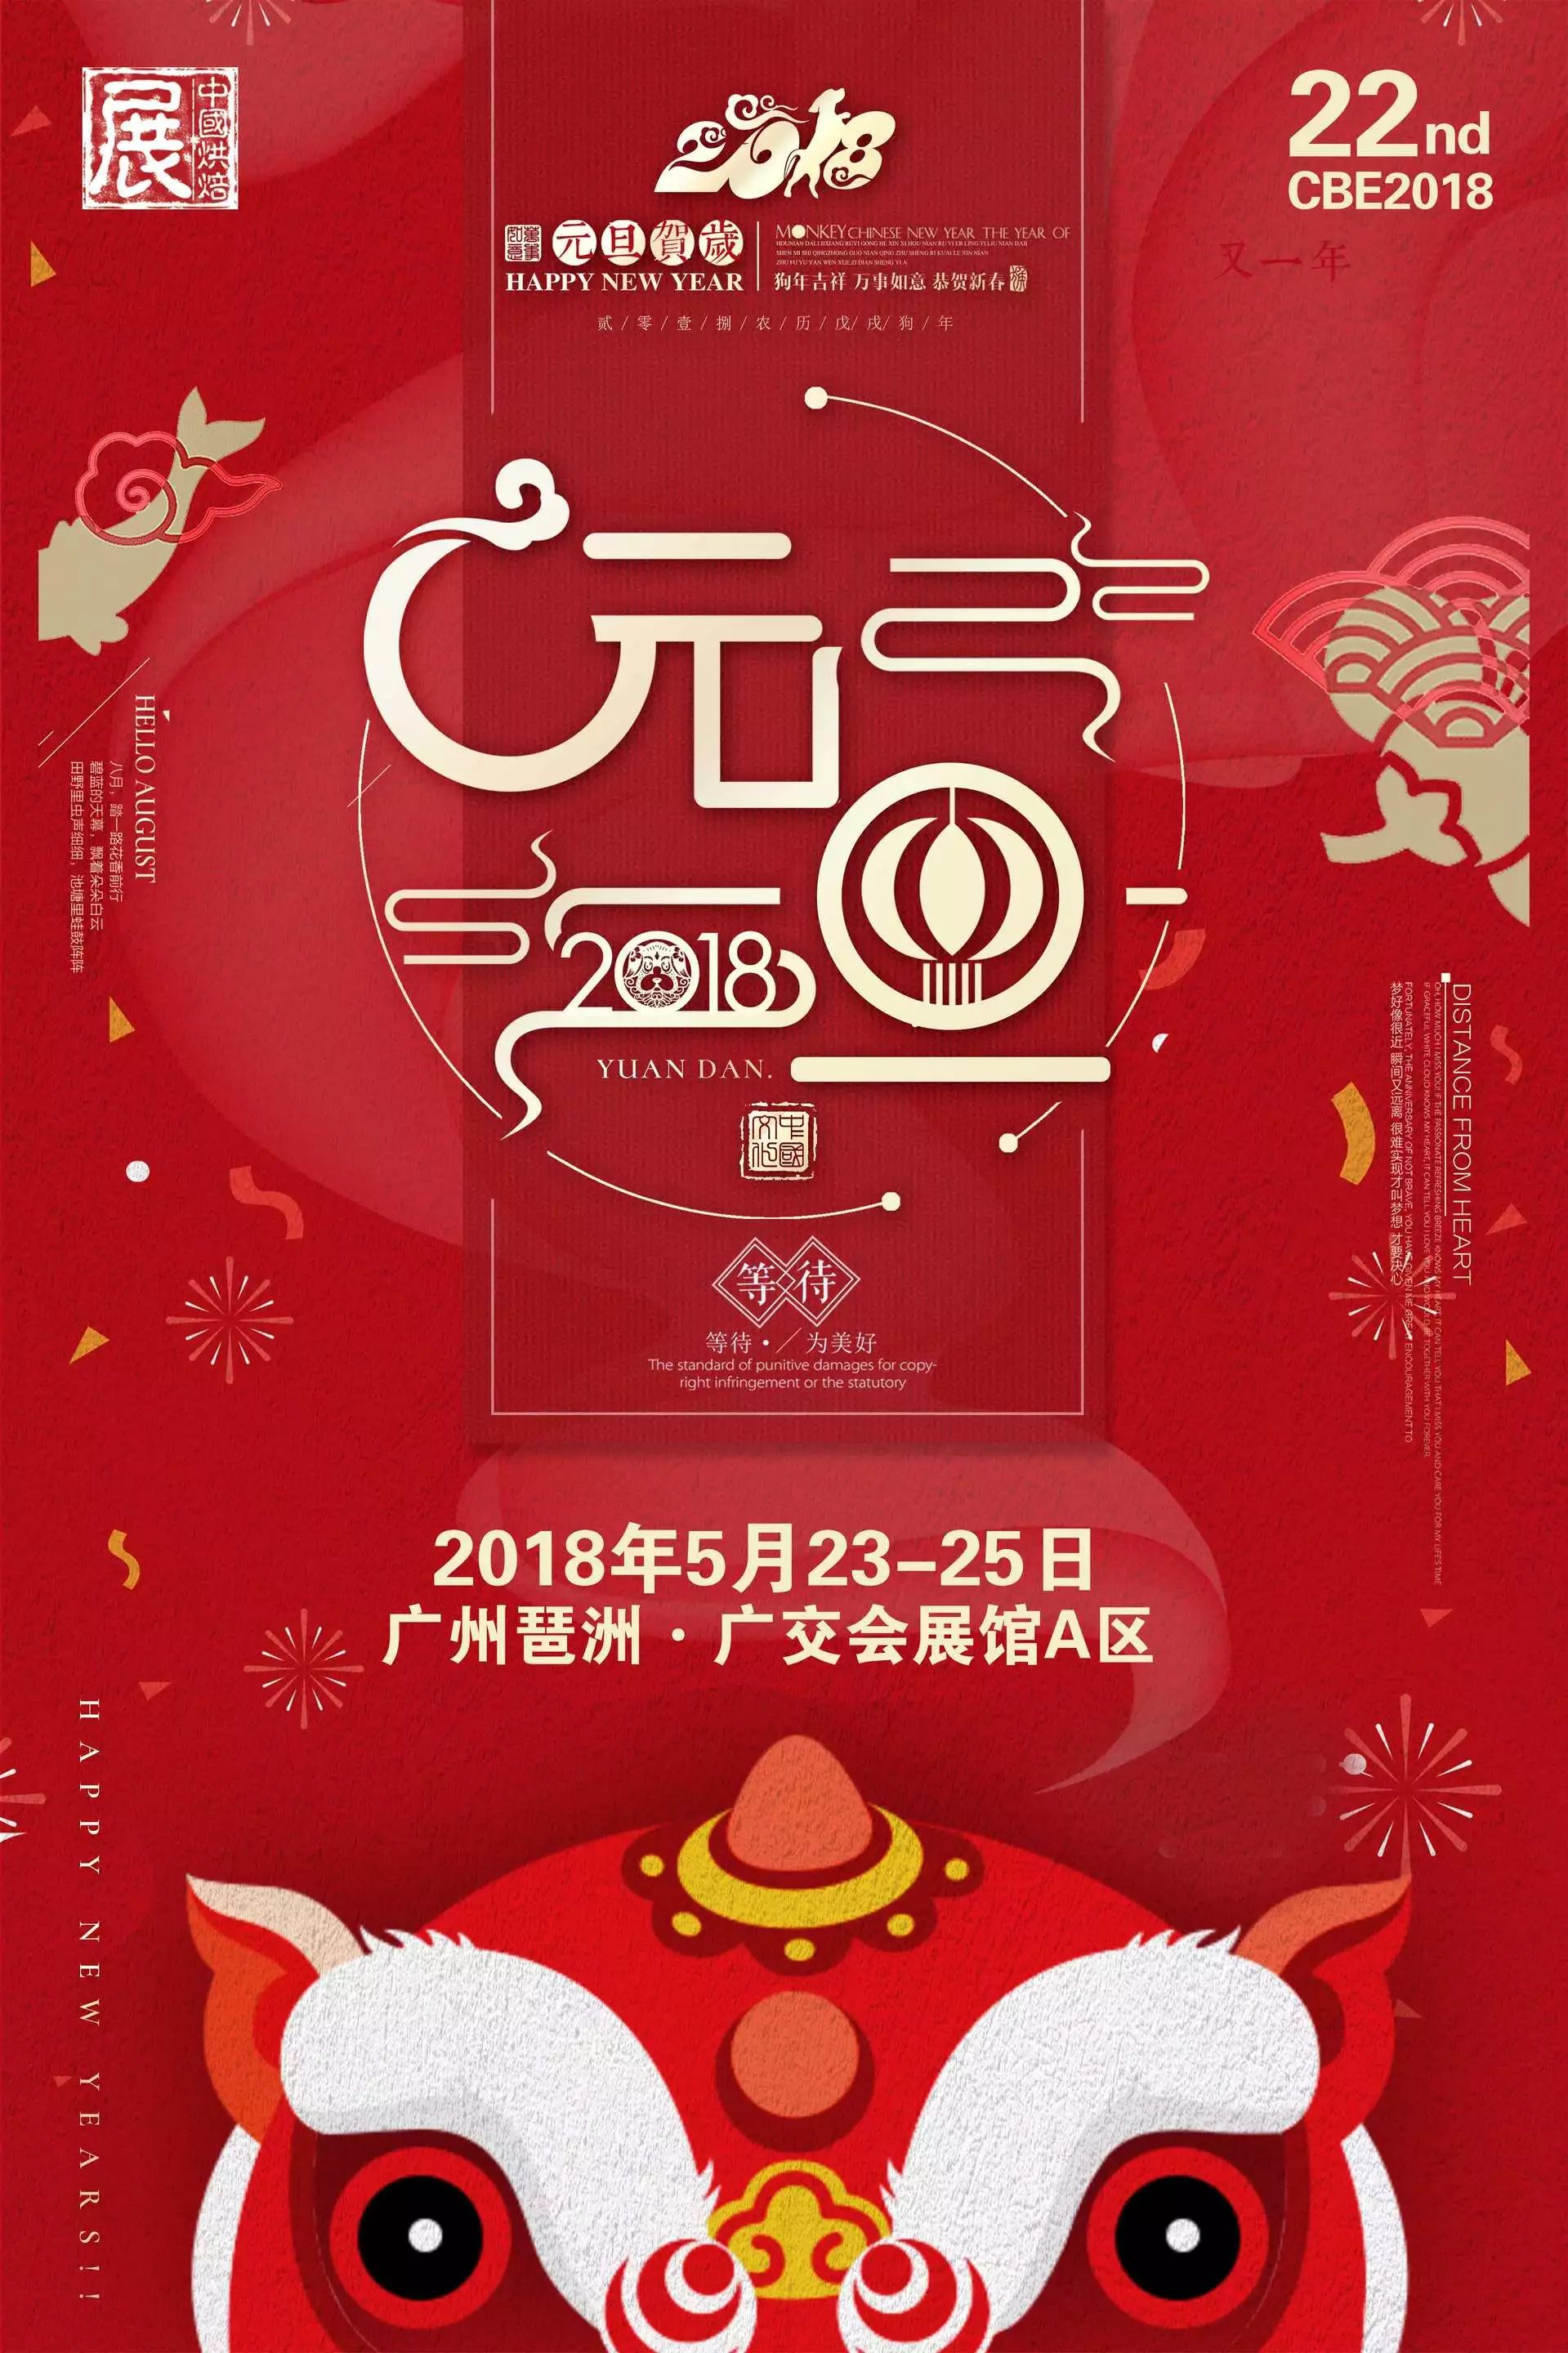 食品展会 烘焙展 焙烤展 食品展会大全 2018第22届中国烘焙展览会 烘焙业公会 广州烘焙展 广州焙烤展